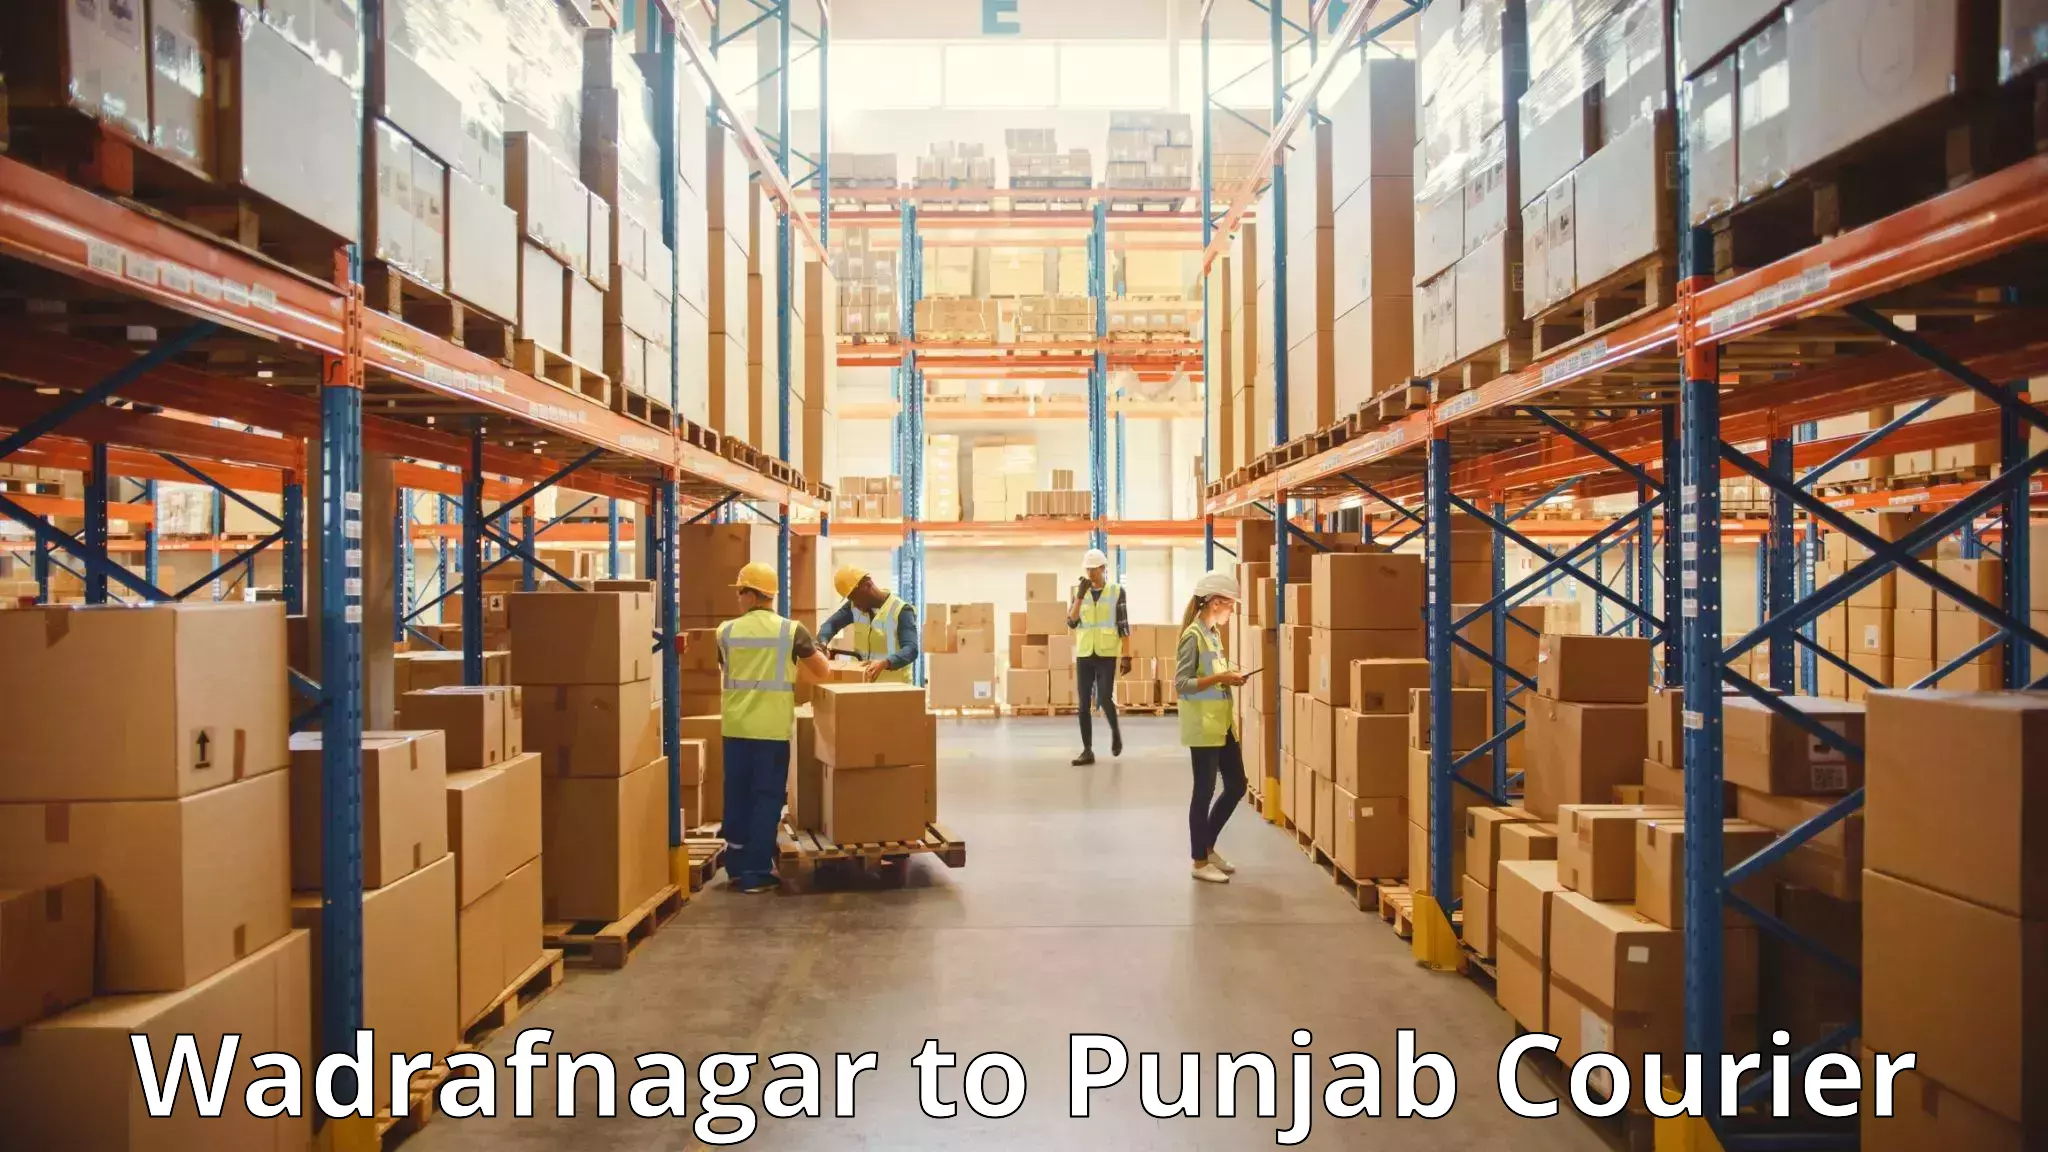 Citywide baggage courier Wadrafnagar to Central University of Punjab Bathinda